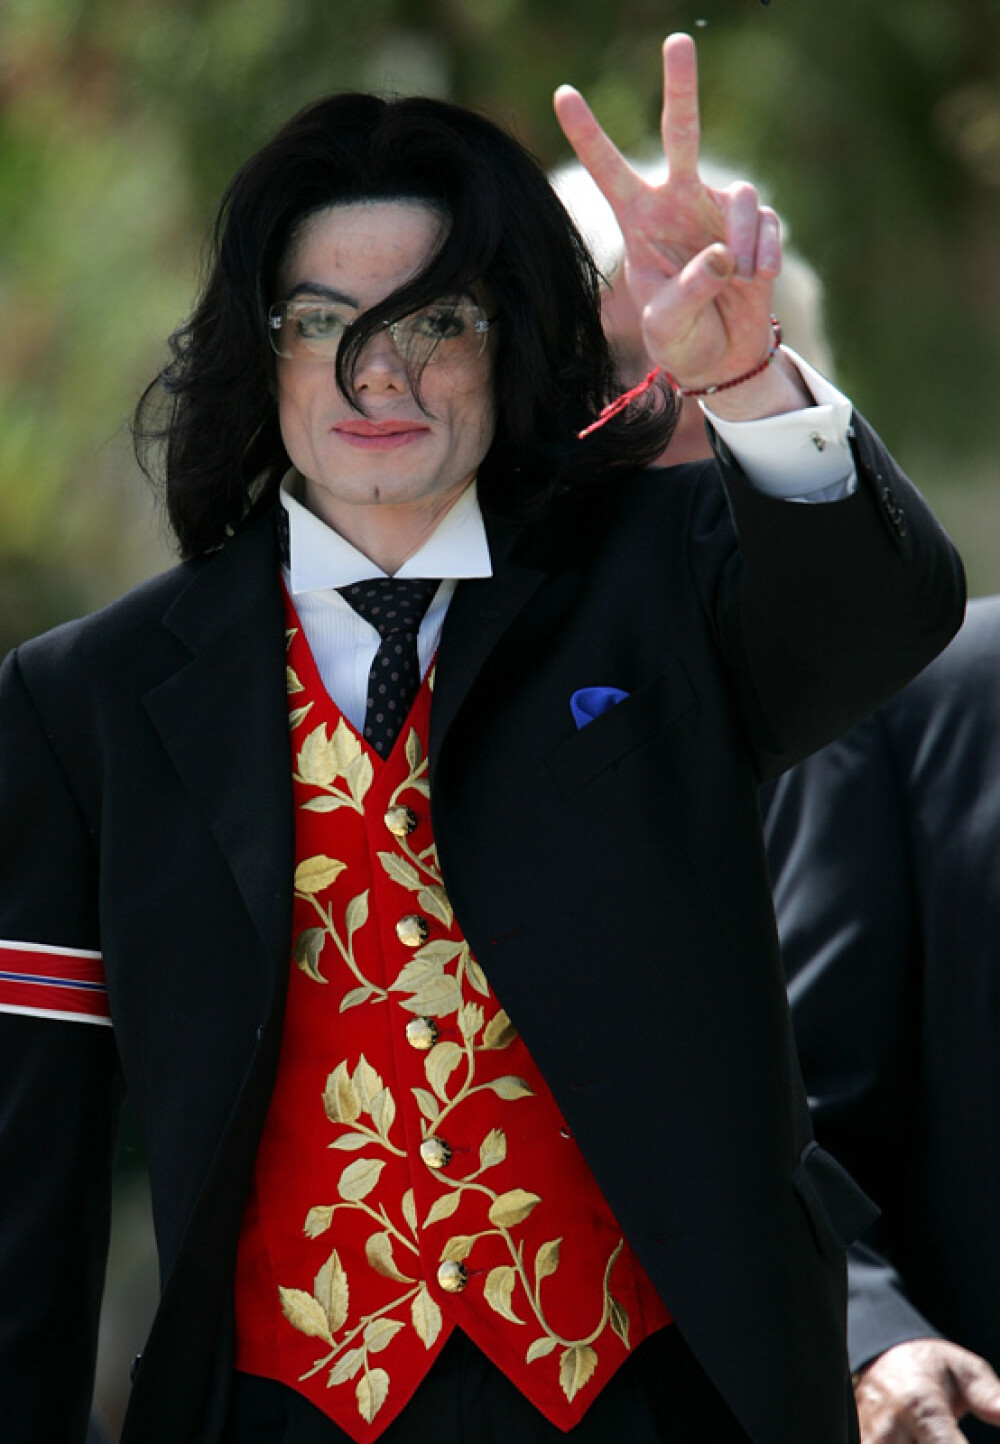 RETROSPECTIVA De ce il iubim pe Michael Jackson! - Imaginea 118